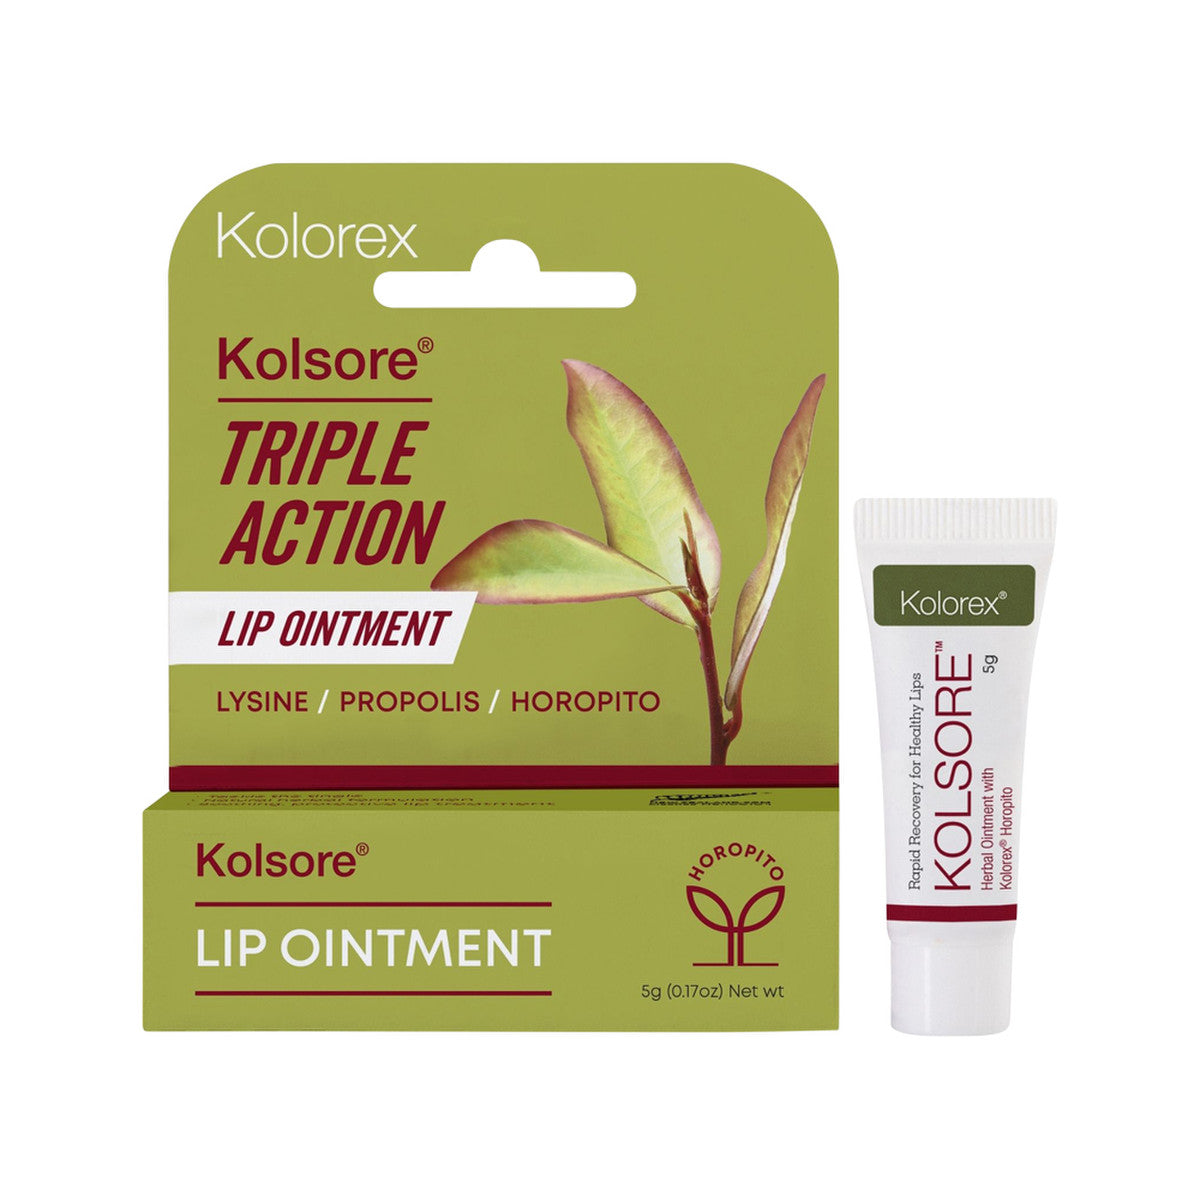 Kolorex - Kolsore Triple Action Lip Ointment